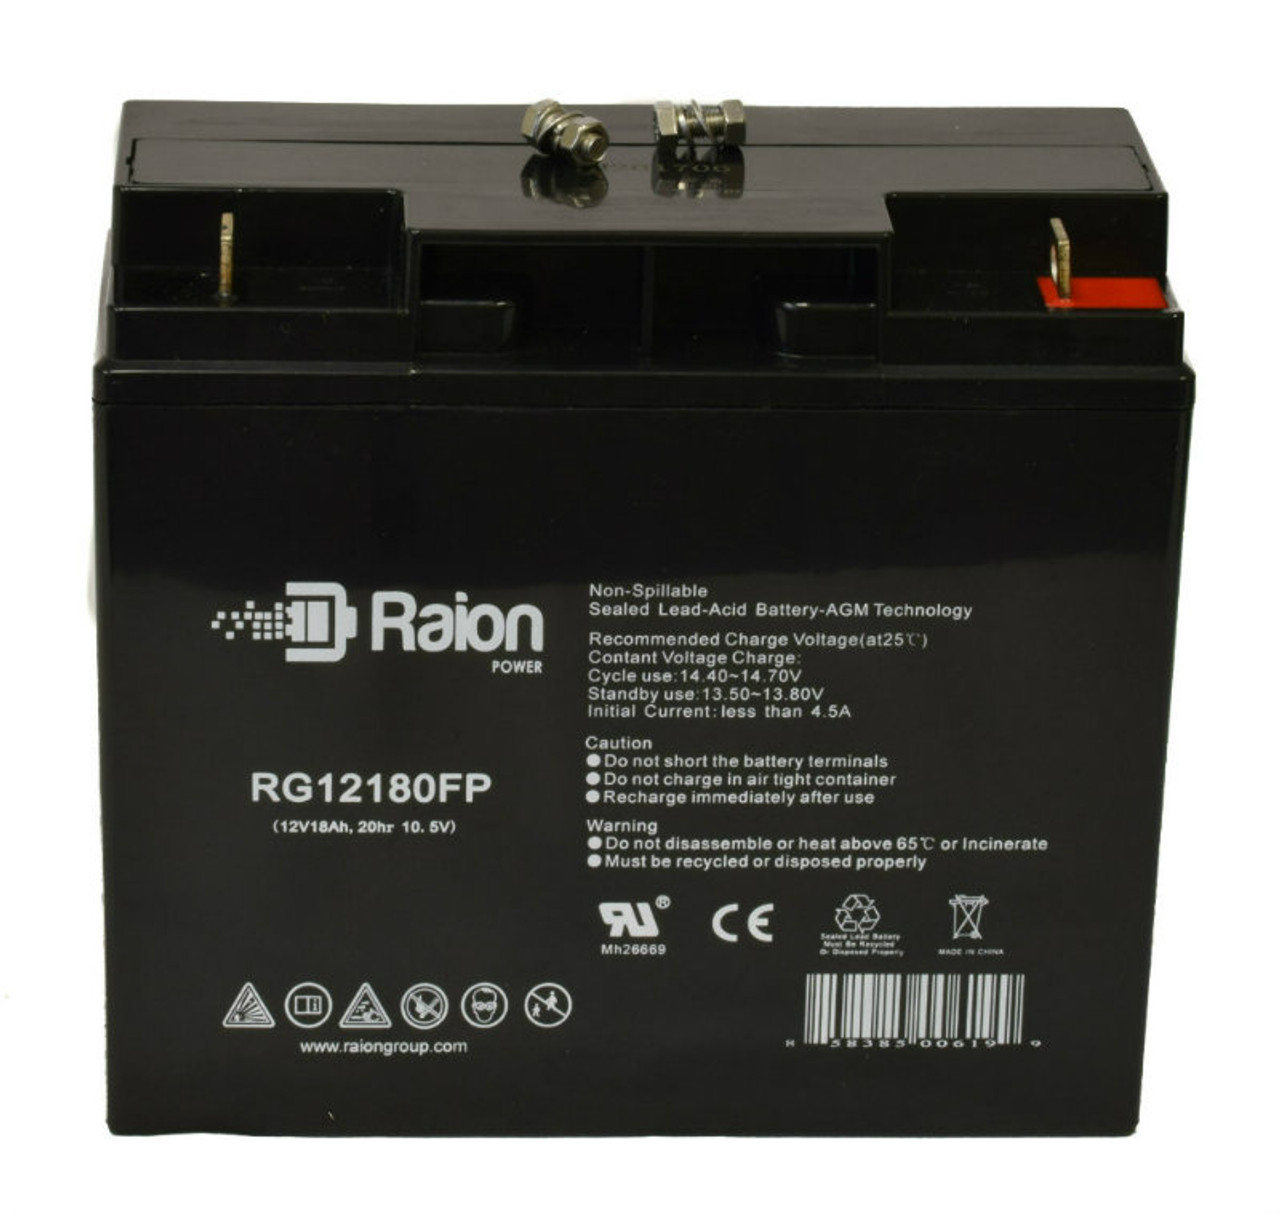 Raion Power RG12180FP 12V 18Ah Lead Acid Battery for FirstPower FP12170